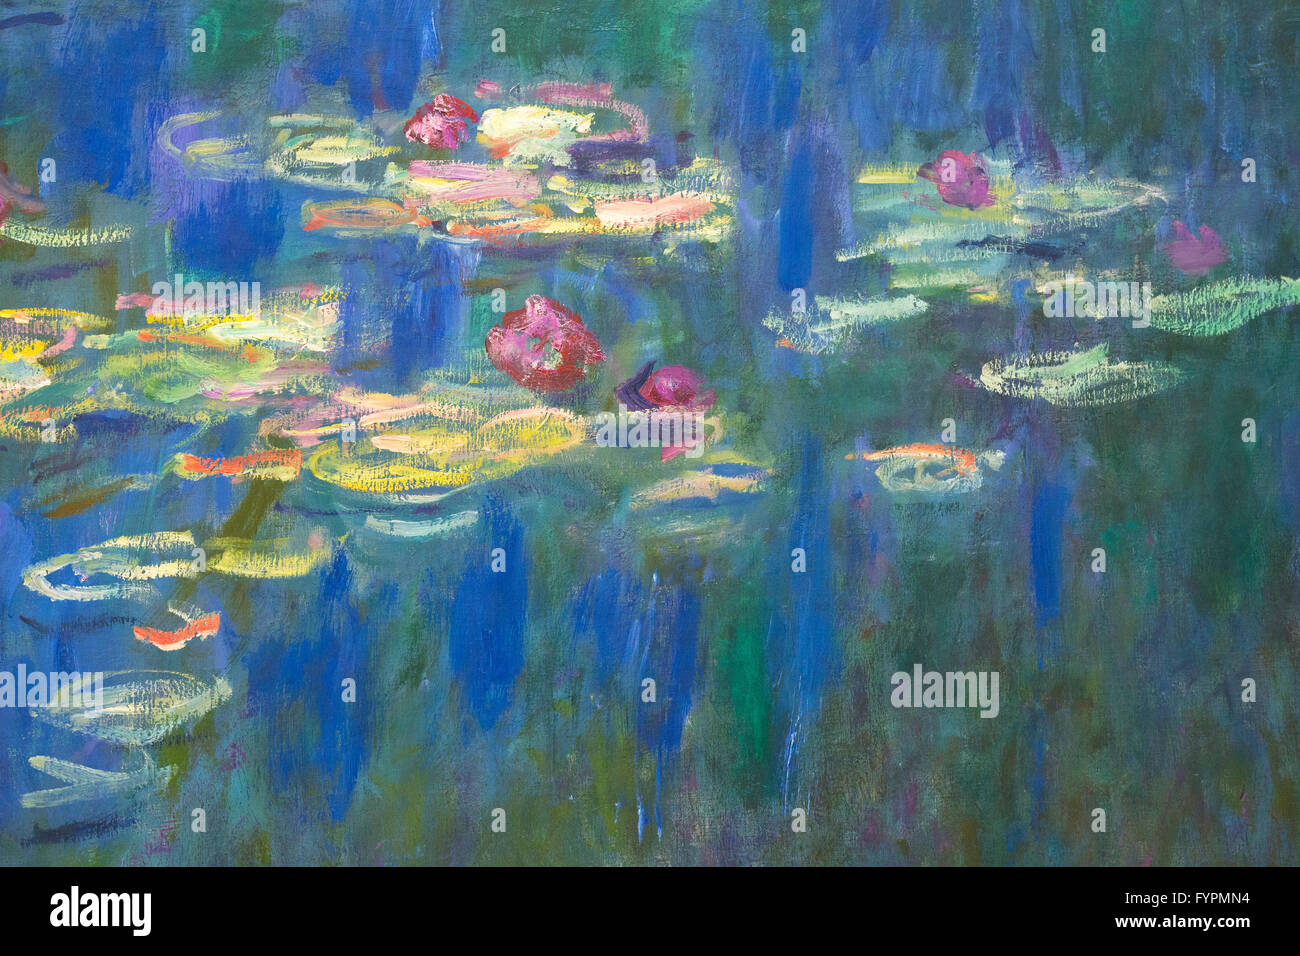 Nympheas, Water Lilies, by Claude Monet, 1918-1926, Musee de L'Orangerie, Paris, France, Europe Stock Photo